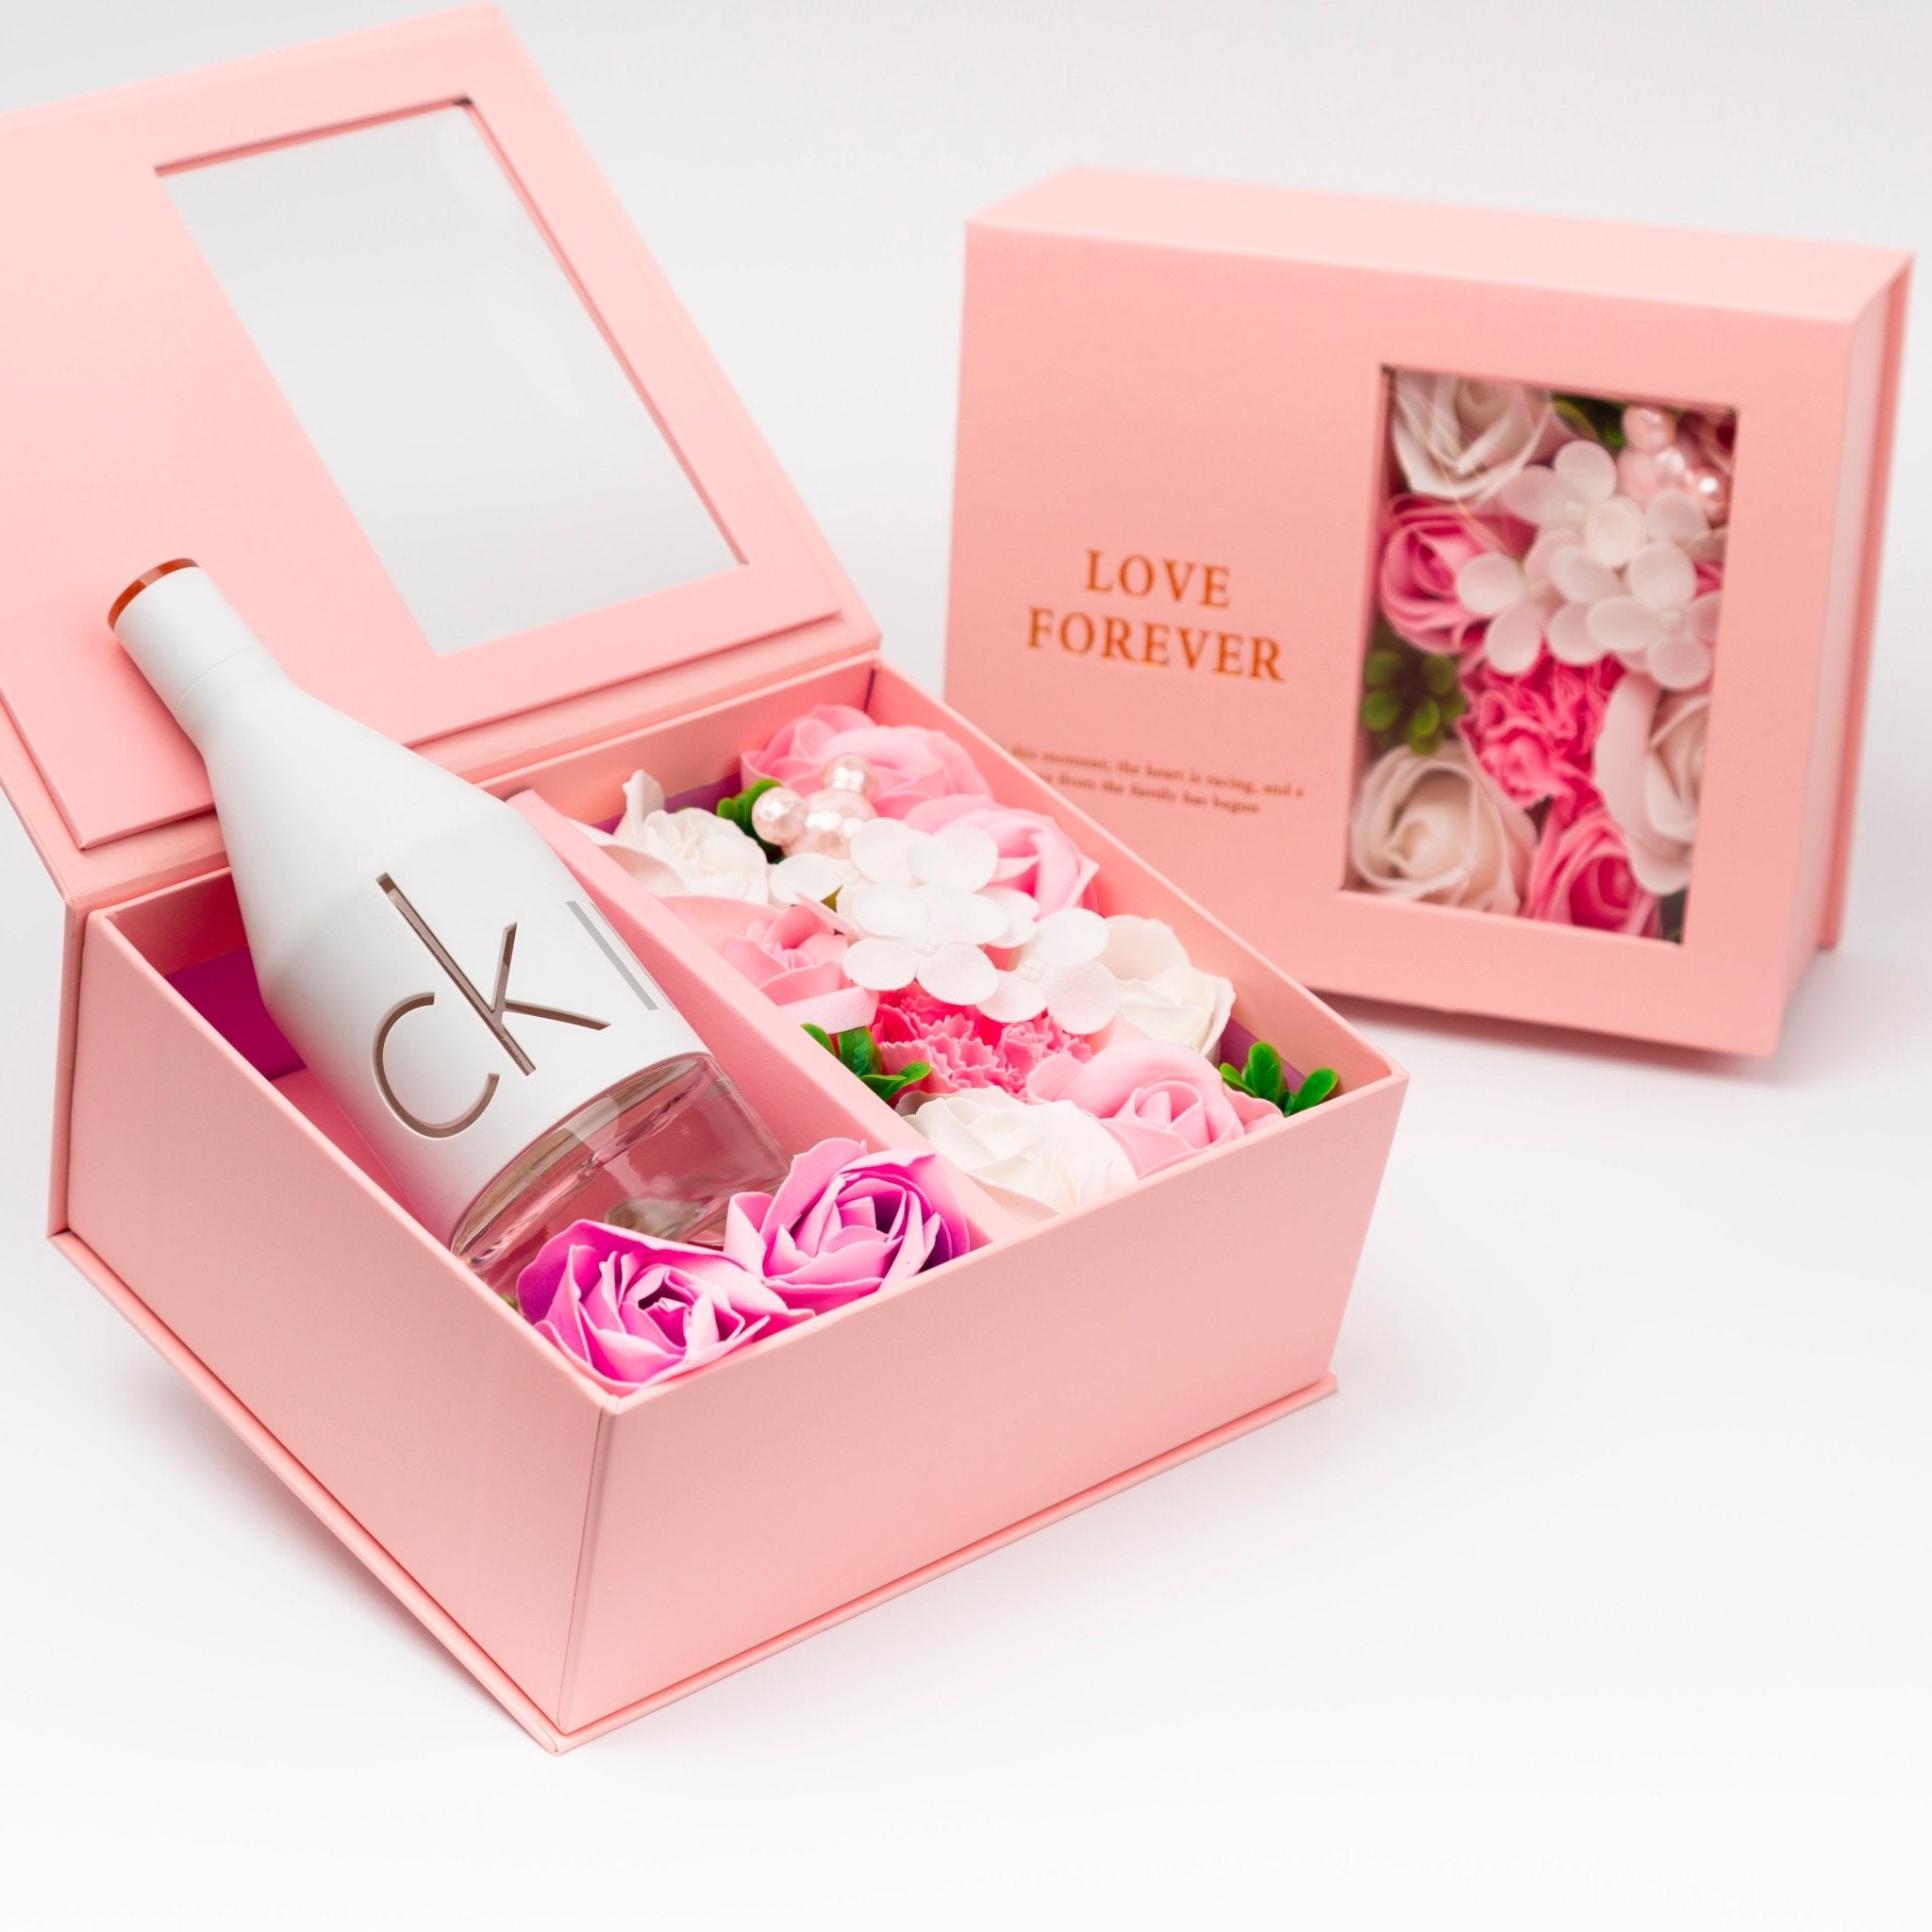 Flower Box - Perfume Gift For Women 16 - #shoFlower Box - Perfume Gift For Women 16p_name#Flower Box - Perfume Gift For Women 16Gift Boxes & TinsTakreemTakreem.joWomenPerfumeFlower Box - Perfume Gift For Women 16 - Takreem.jo